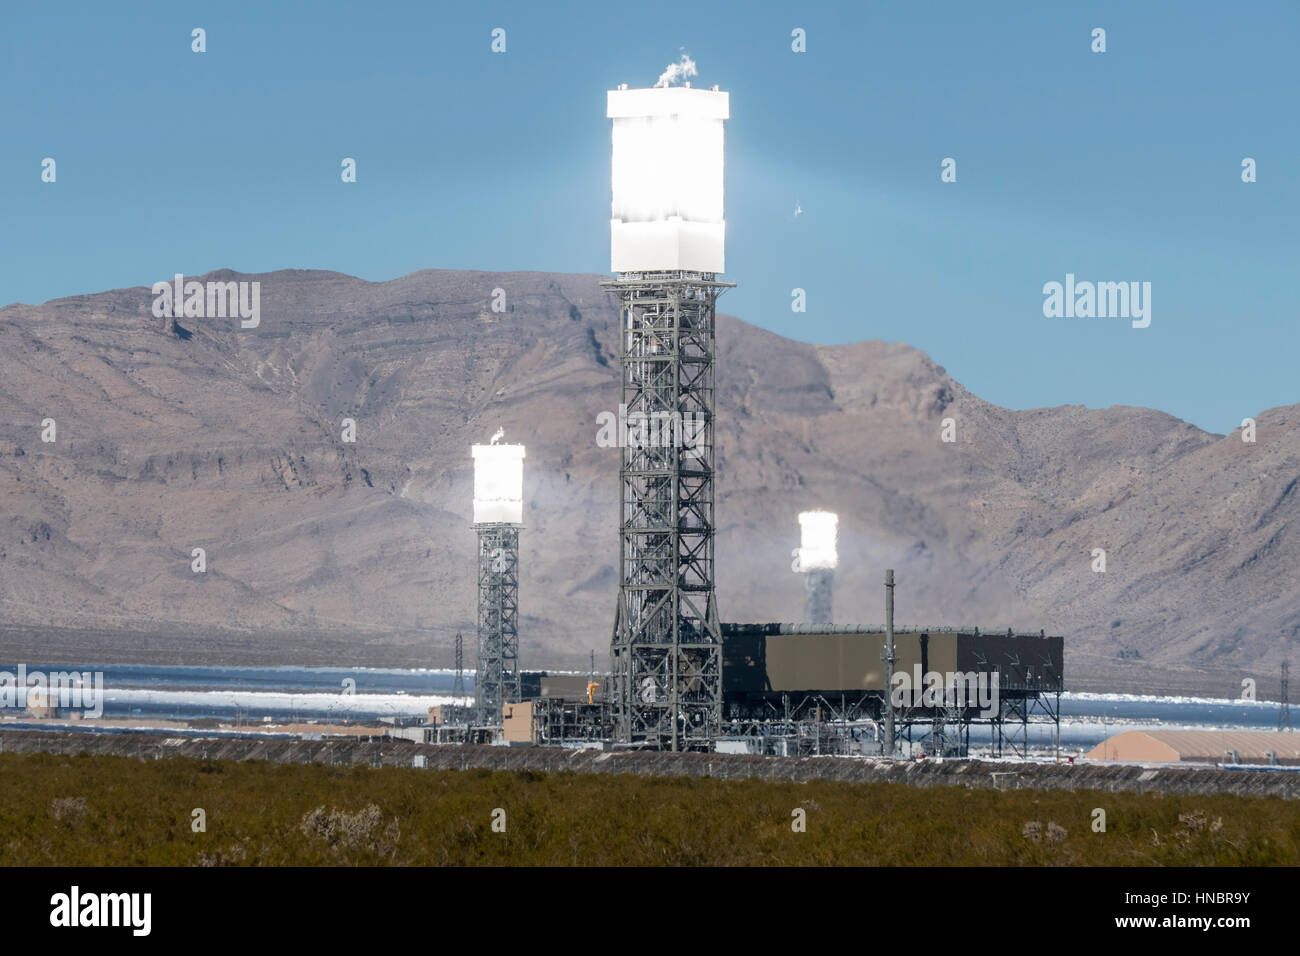 Ivanpah, Kalifornien, USA - 26. November 2014: Fokussierte Spiegel produzieren Hitze schimmert im massiven 392 Megawatt Ivanpah solar-Kraftwerk. Stockfoto